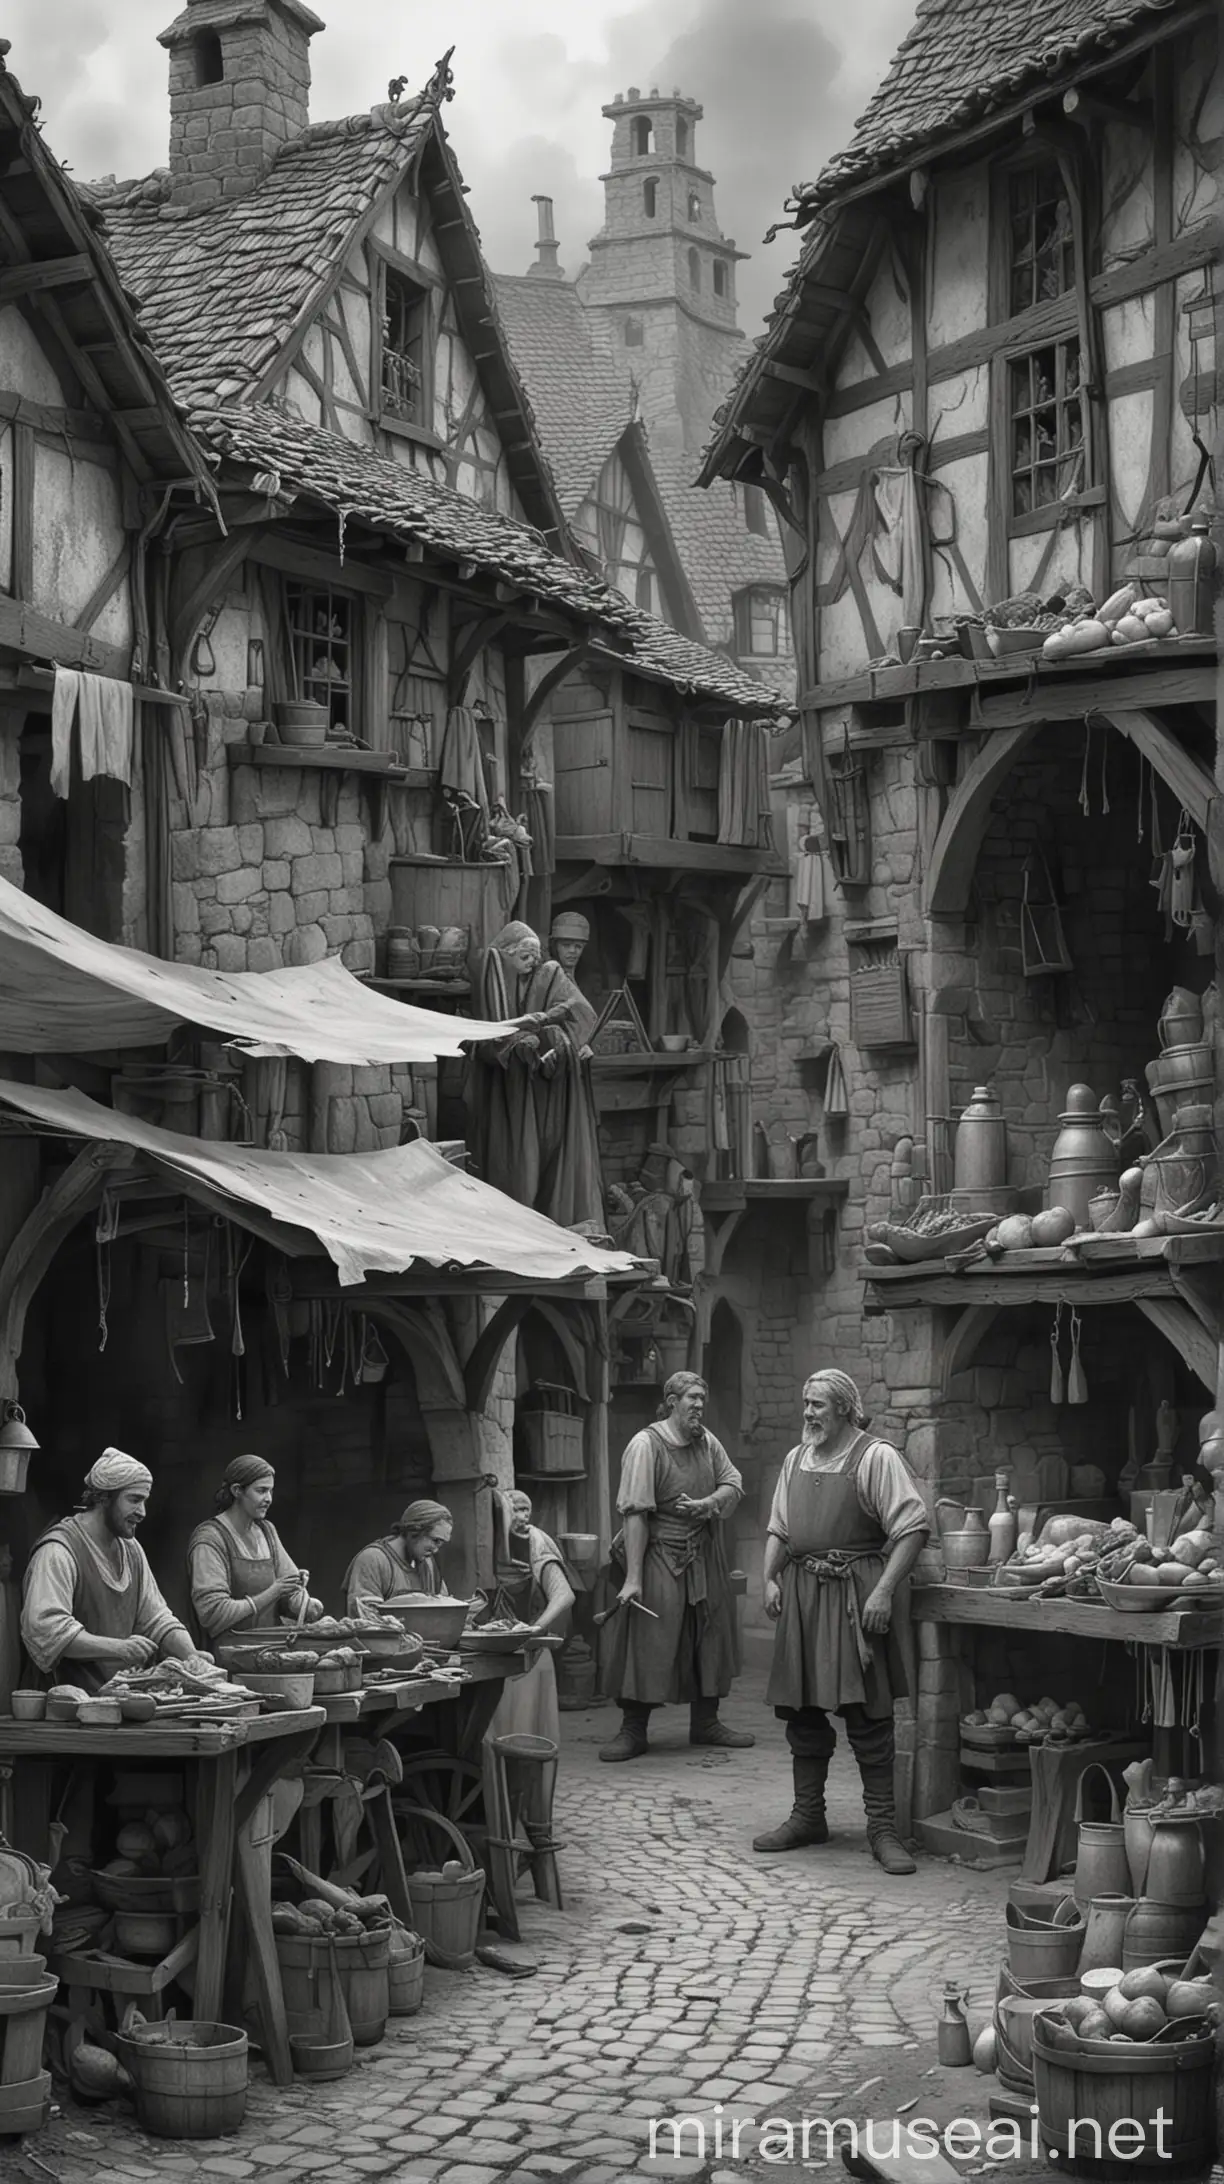 Dibujo en escala de grises, estilo medieval de vendedores, herrero, carnicero y gente en su pueblo contenta